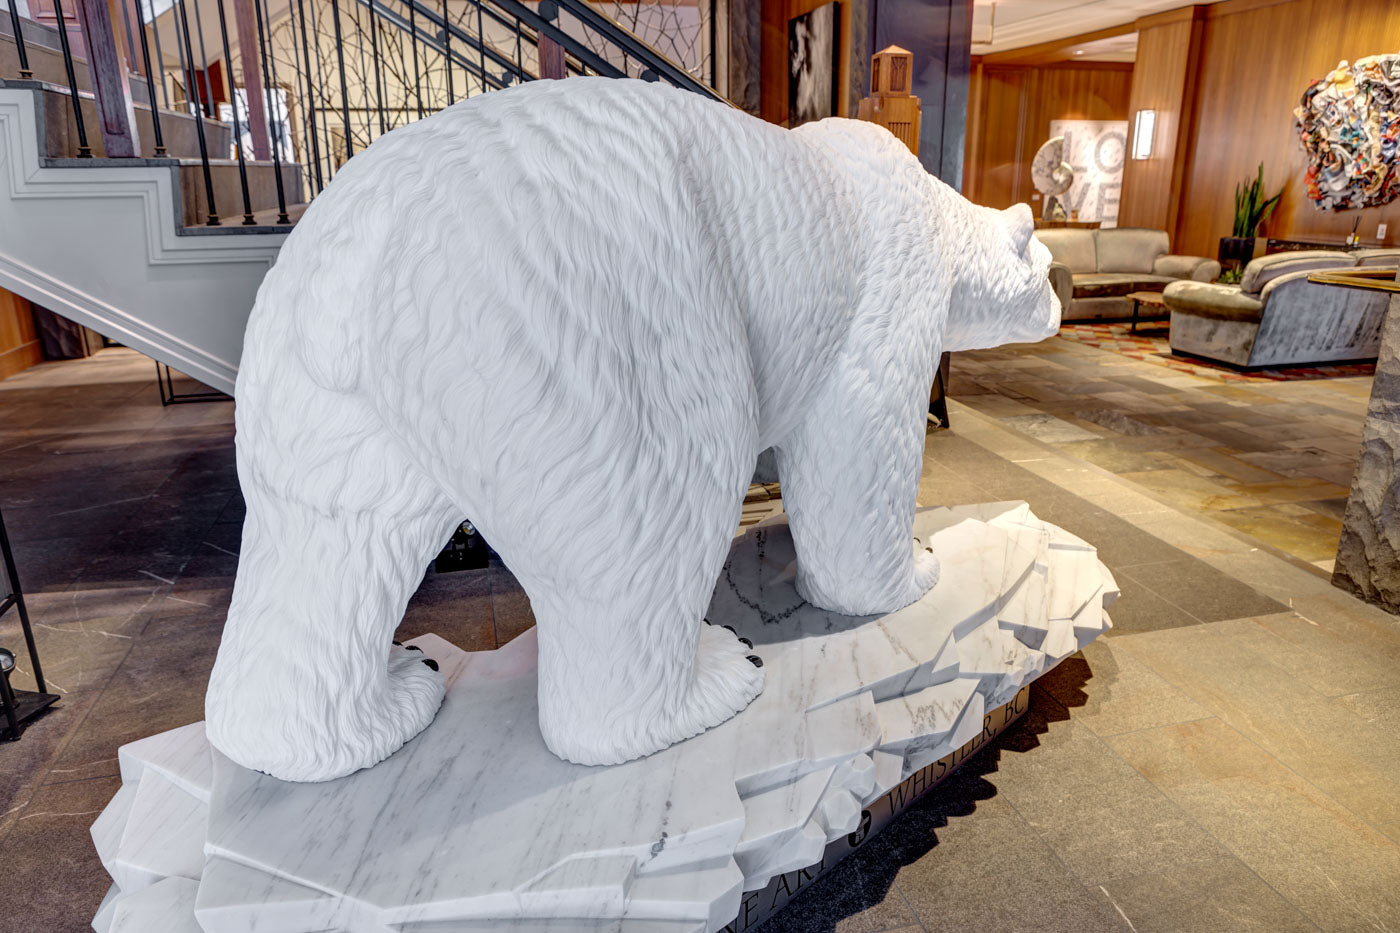 Arctic Pursuit - 7' Life Size Polar Bear